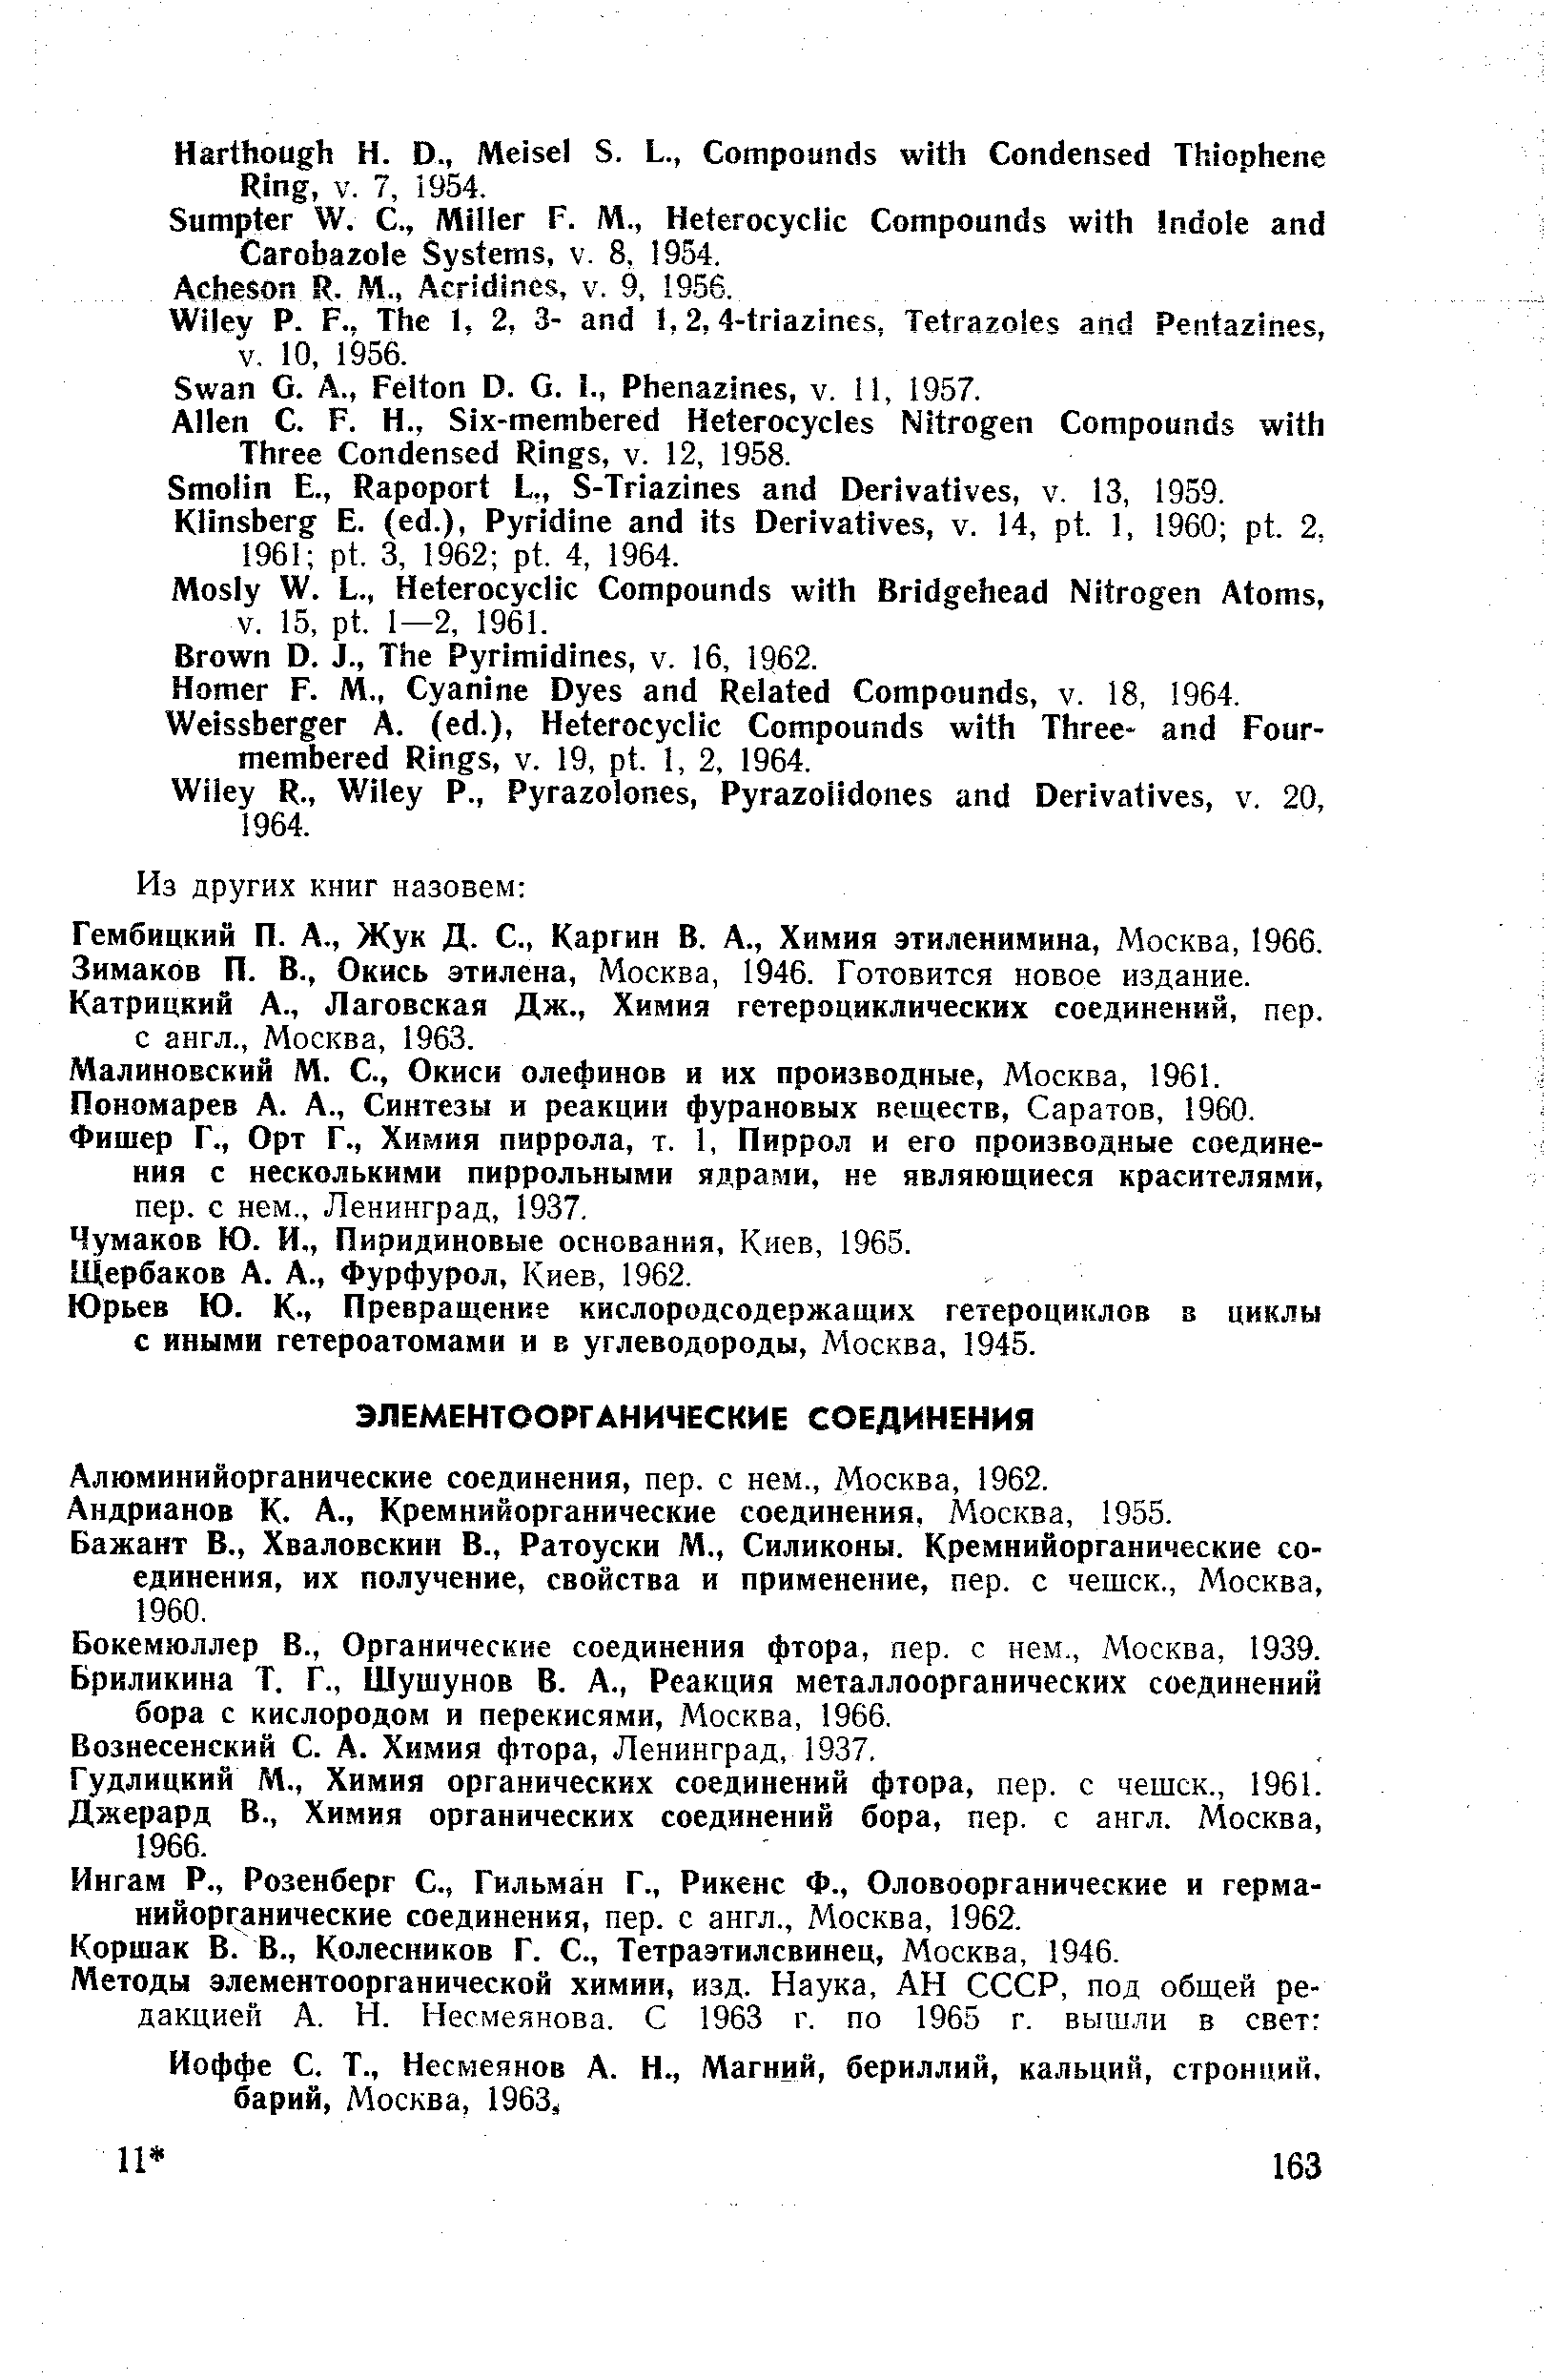 Алюминийорганические соединения, пер. с нем., Москва, 1962.